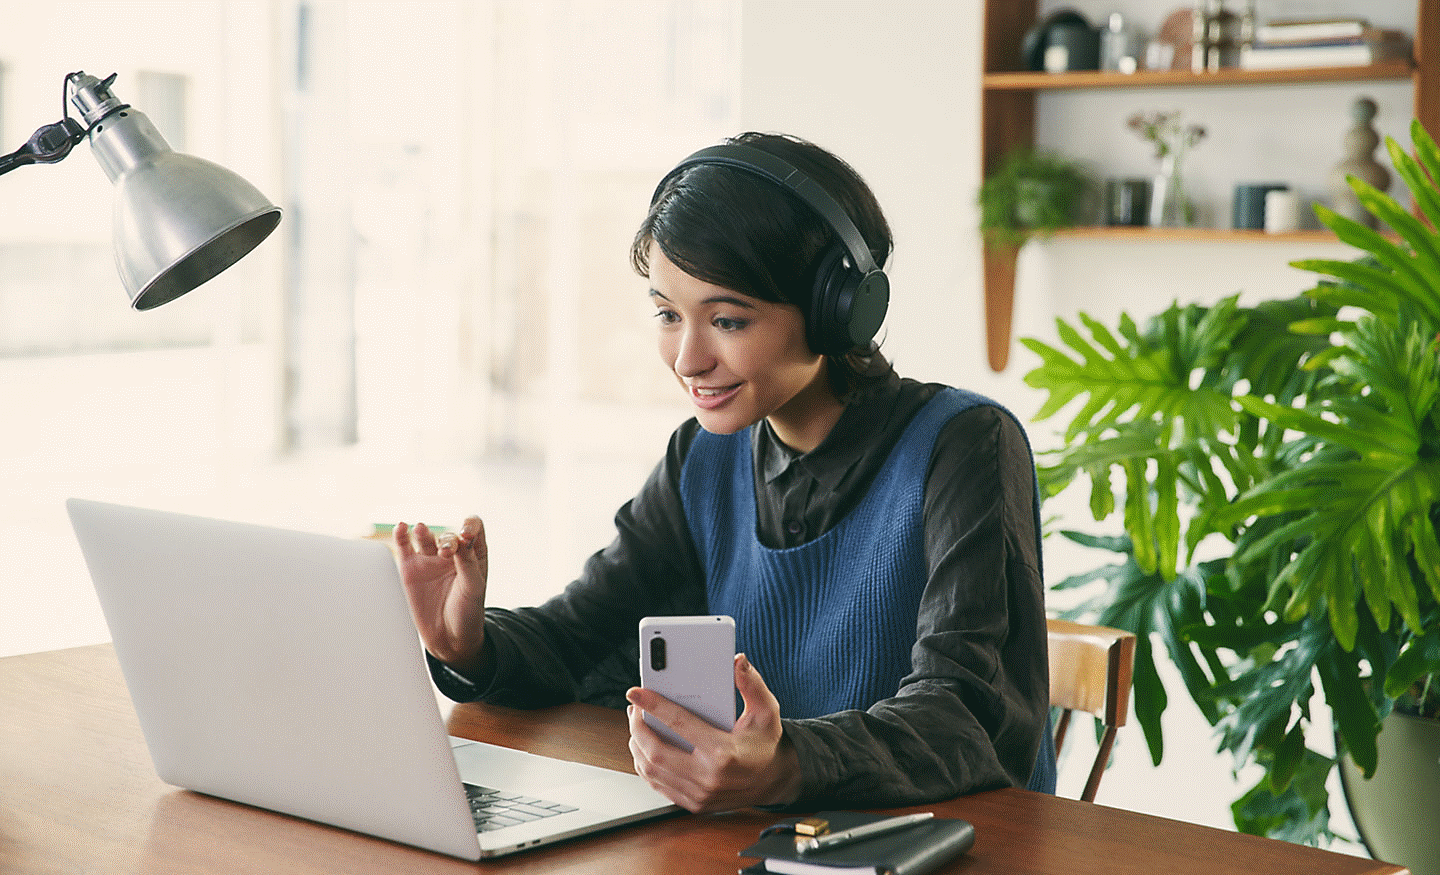 Hình ảnh một người phụ nữ ở bàn làm việc đeo cặp tai nghe Sony WH-CH720 màu đen, đang sử dụng máy tính xách tay và điện thoại di động